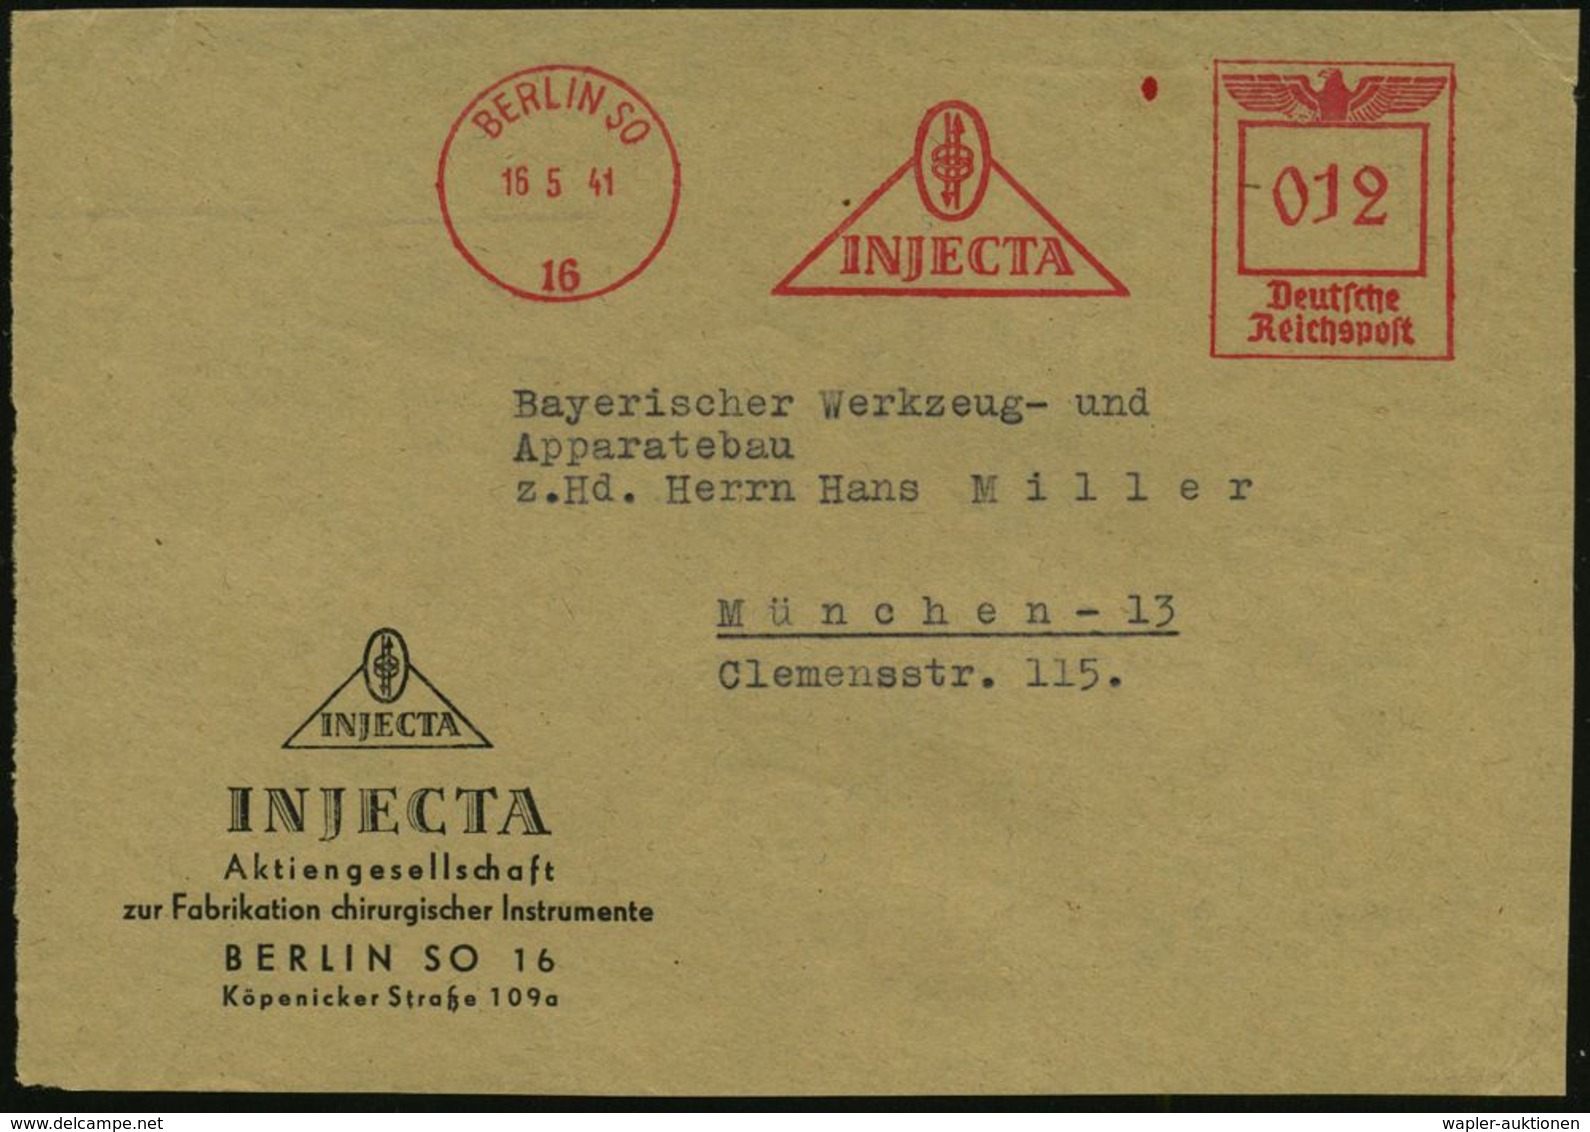 MEDIZINISCHE AUSRÜSTUNG & INSTRUMENTE : BERLIN SO/ 16/ INJECTA 1941 (16.5.) AFS (Logo) Motivgl. Firmen-Vs.: INJECTA, Fab - Medicina